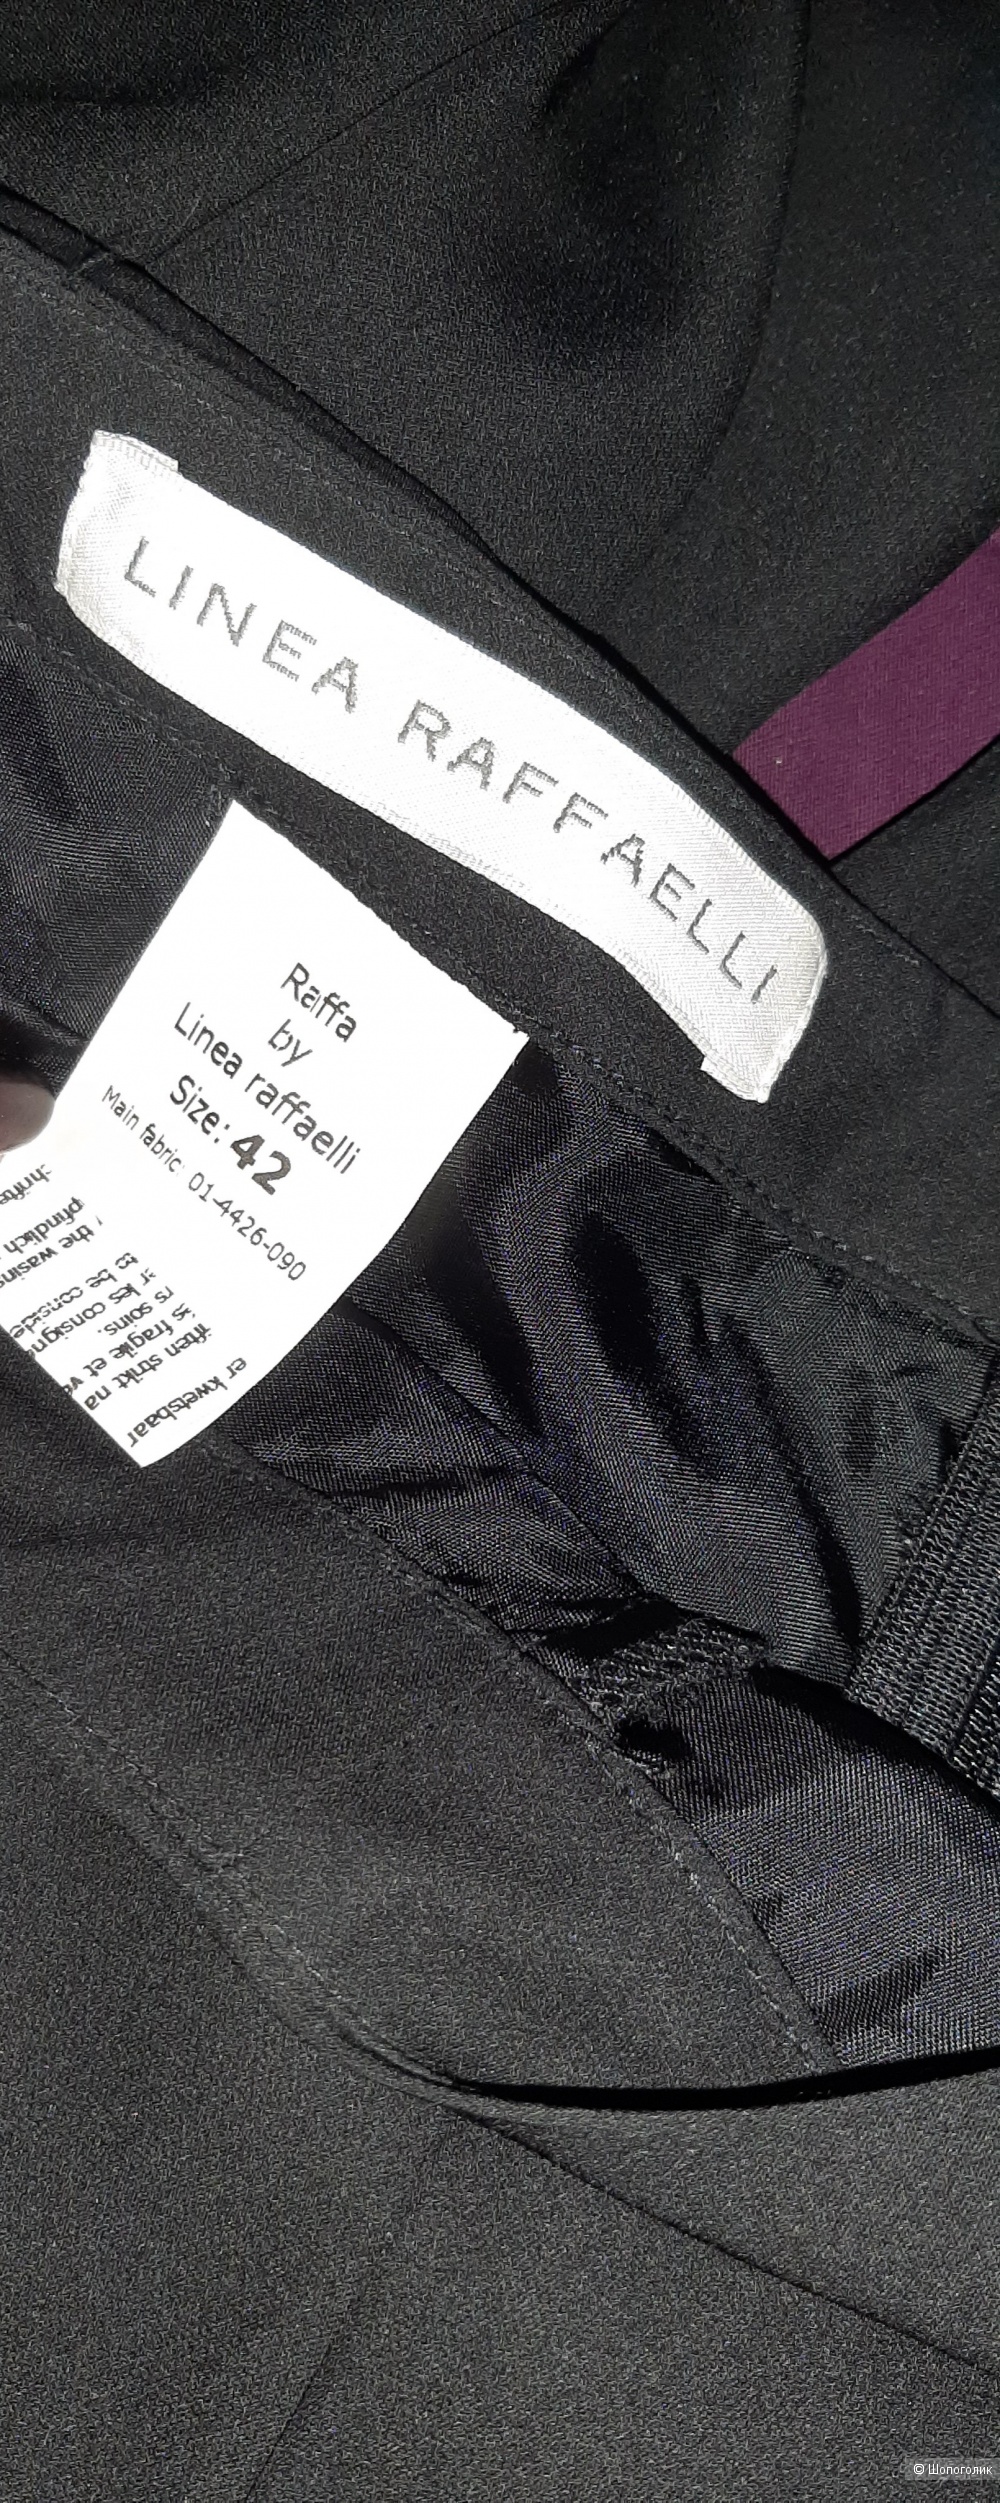 Шелковые брюки Linea Raffaelli, eur 42 на 46-48